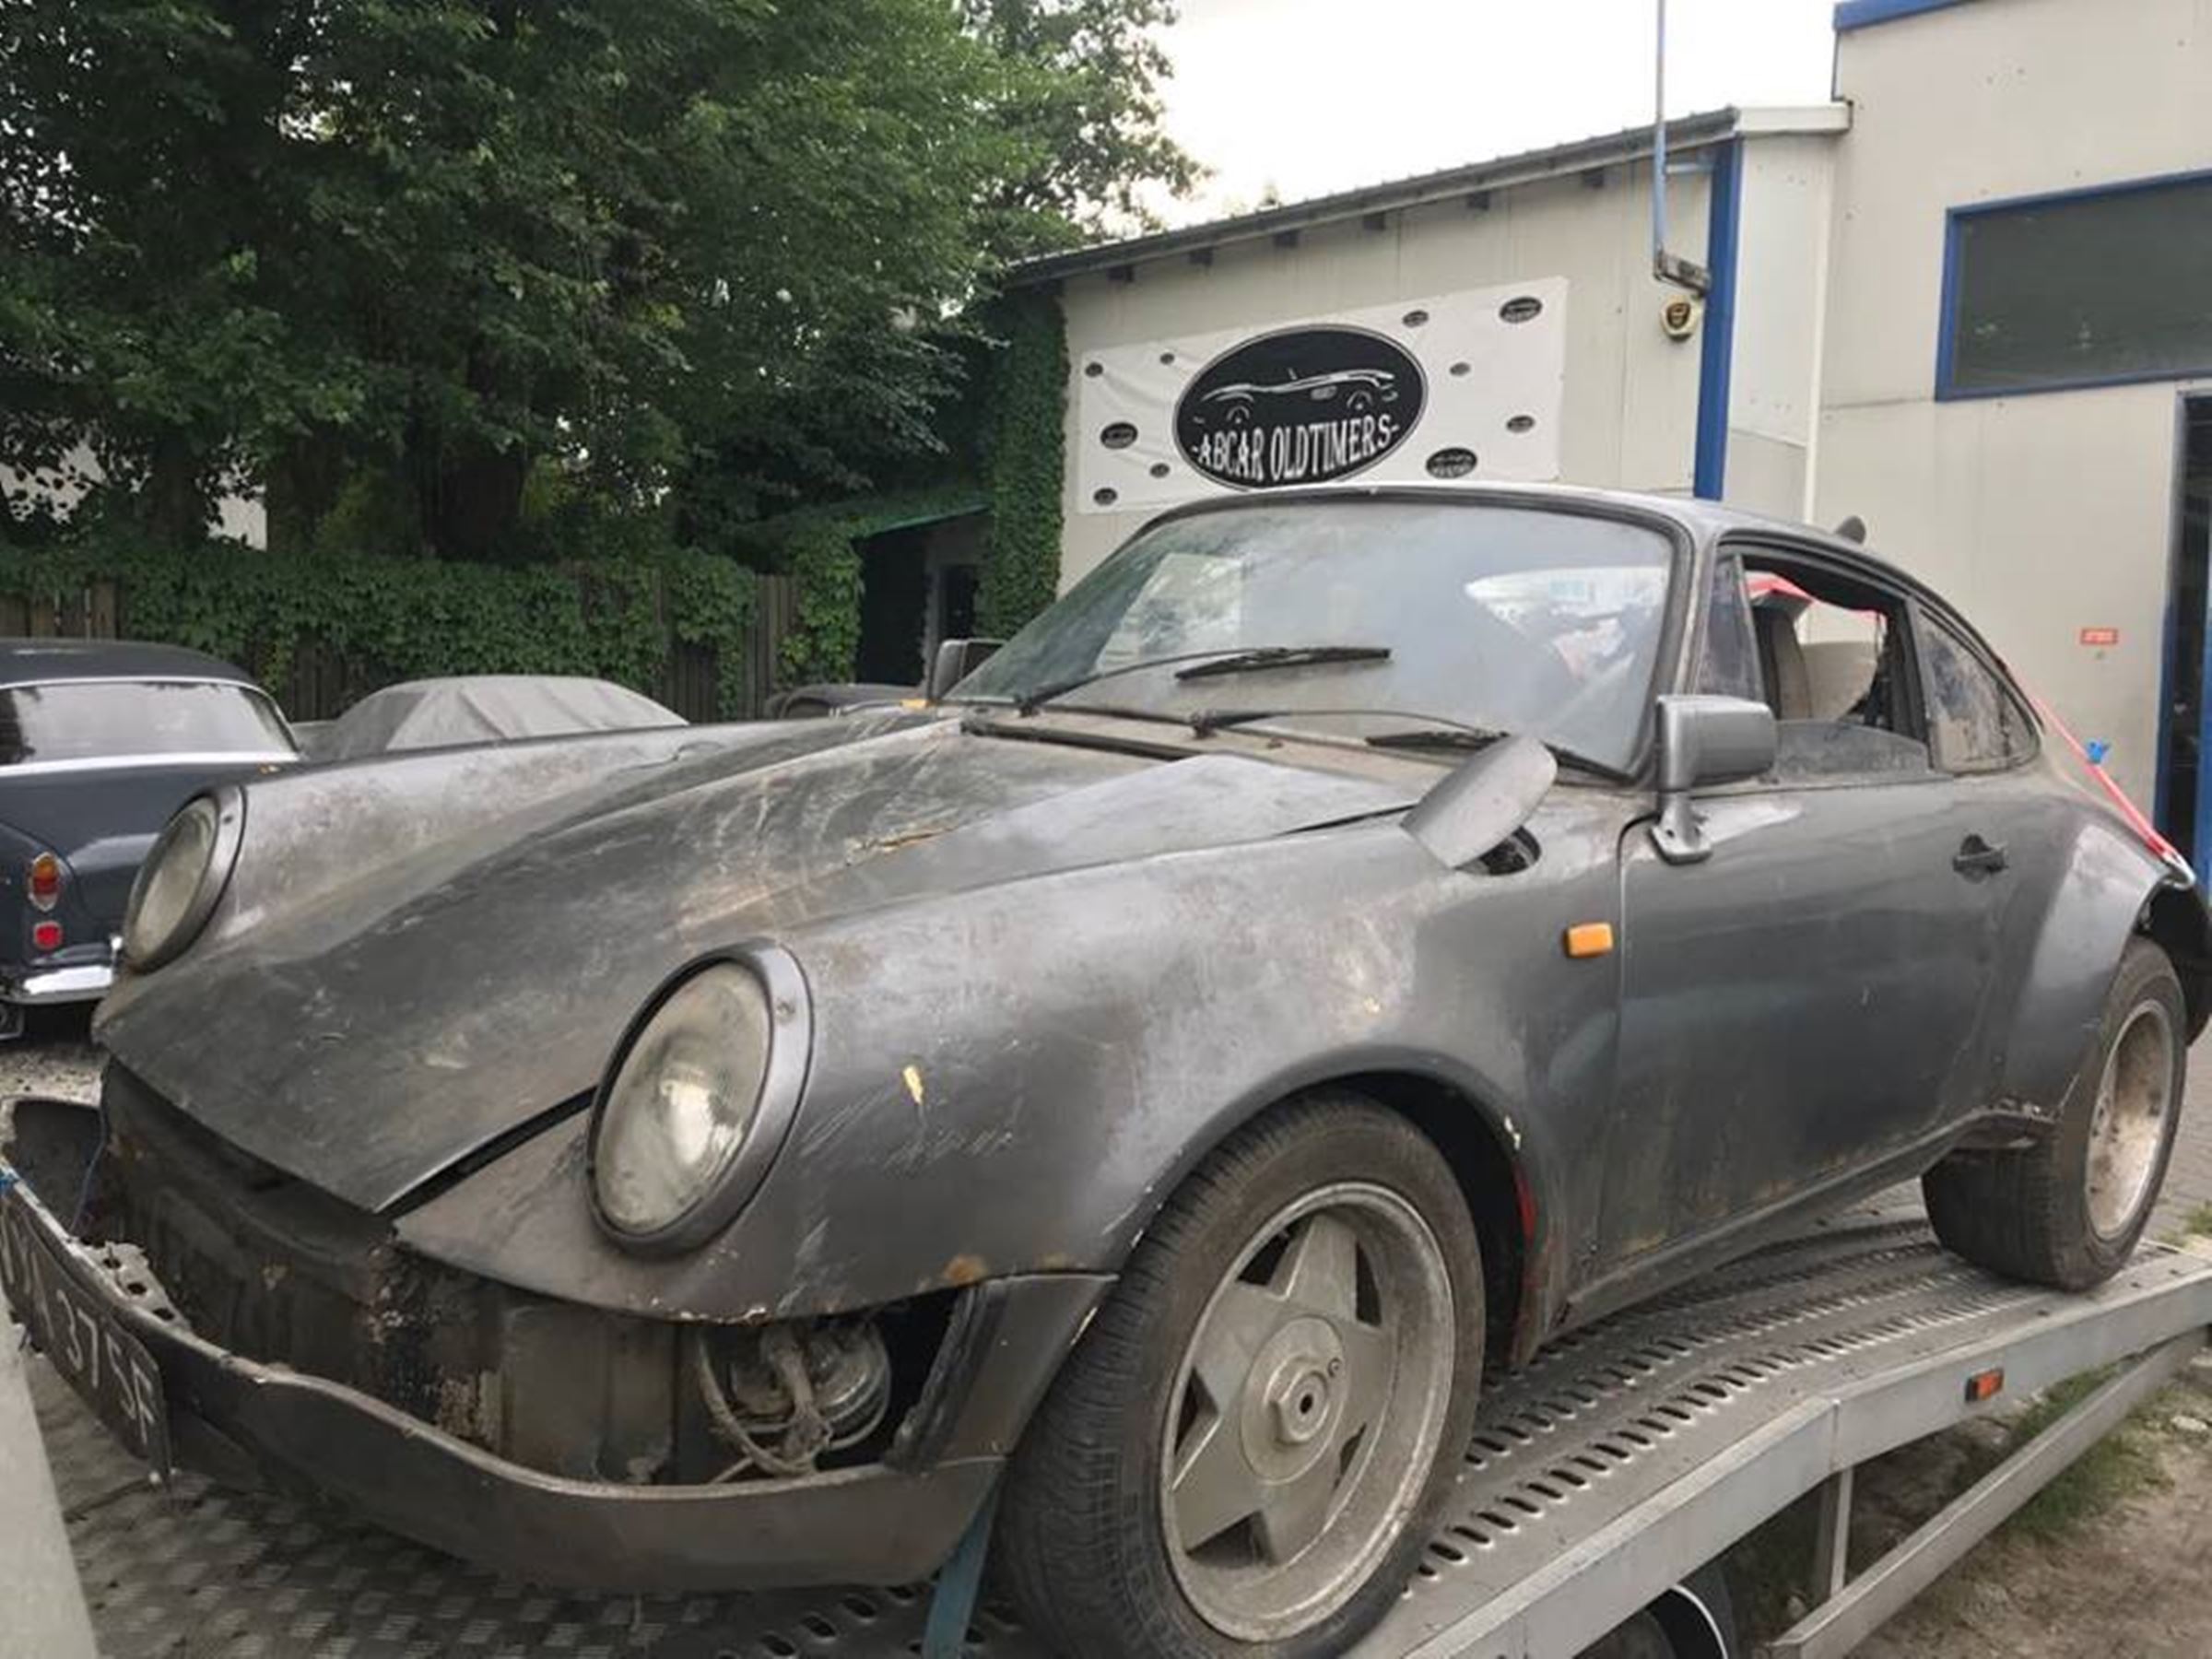 Patryk Mikiciuk chce odrestaurować Porsche 911 z częściami